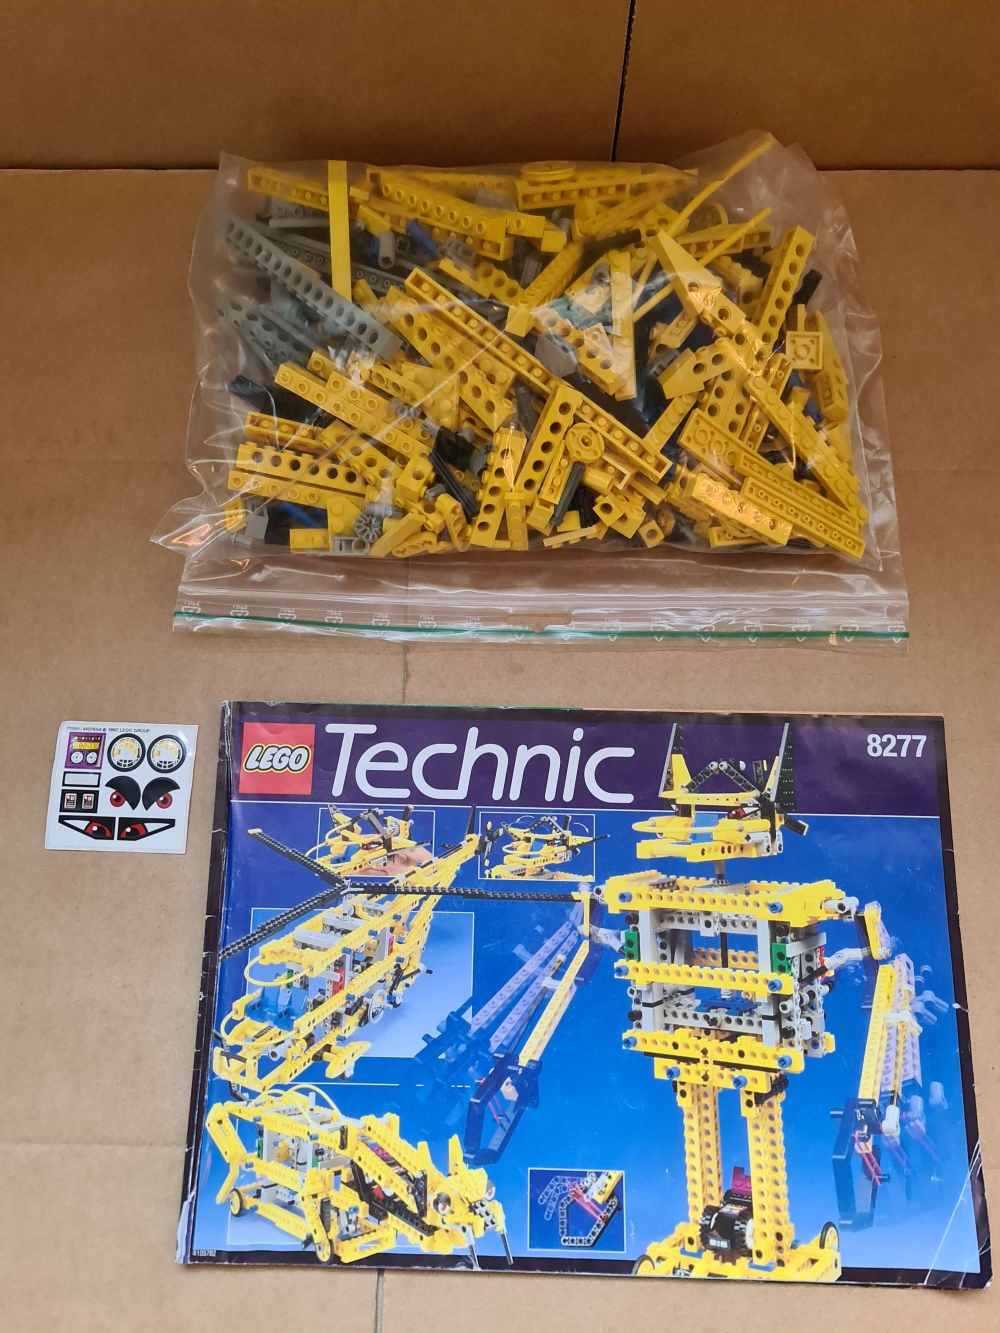 Sett 8277 fra Lego Technic serien.
Meget pent.
Komplett med manual.
Ubrukte klistremerker men ett lite merke har forsvunnet.
